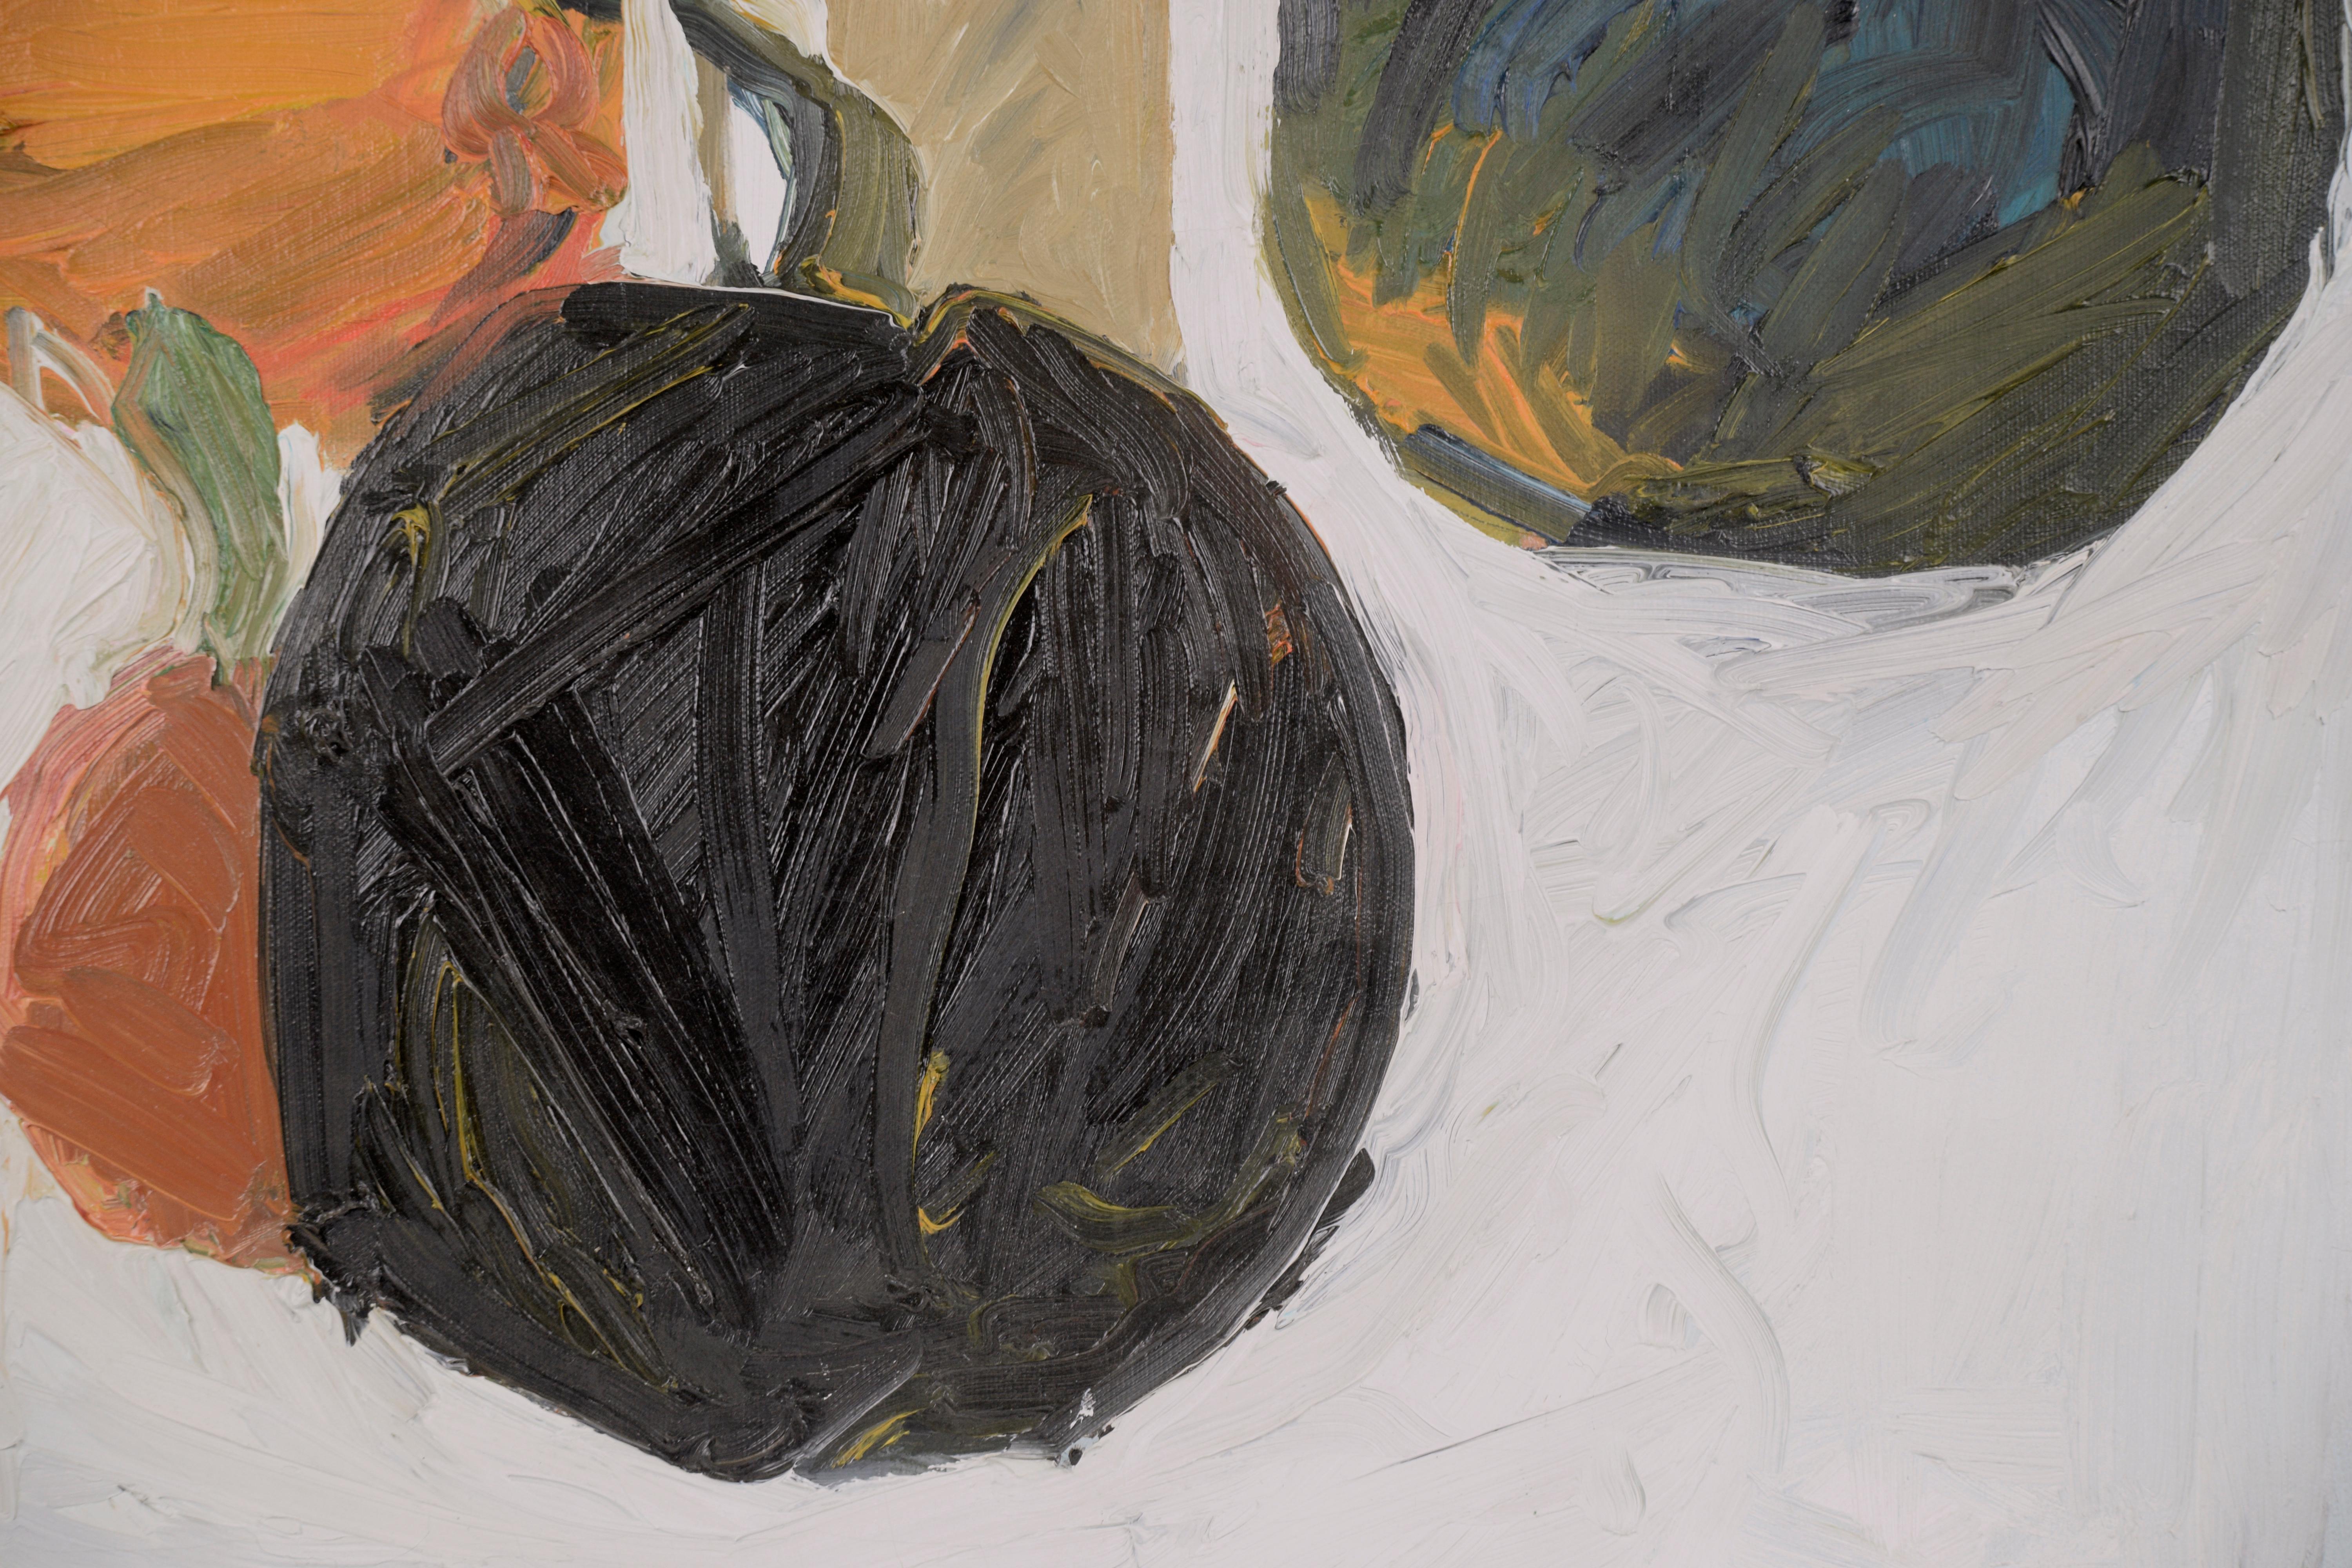 Nature morte automnale expressionniste moderne représentant la récolte de courges d'hiver, réalisée par l'artiste de la région de la baie de San Francisco Michael Pauker (Américain, né en 1957), vers 1970. Malgré le sujet plus traditionnel, les